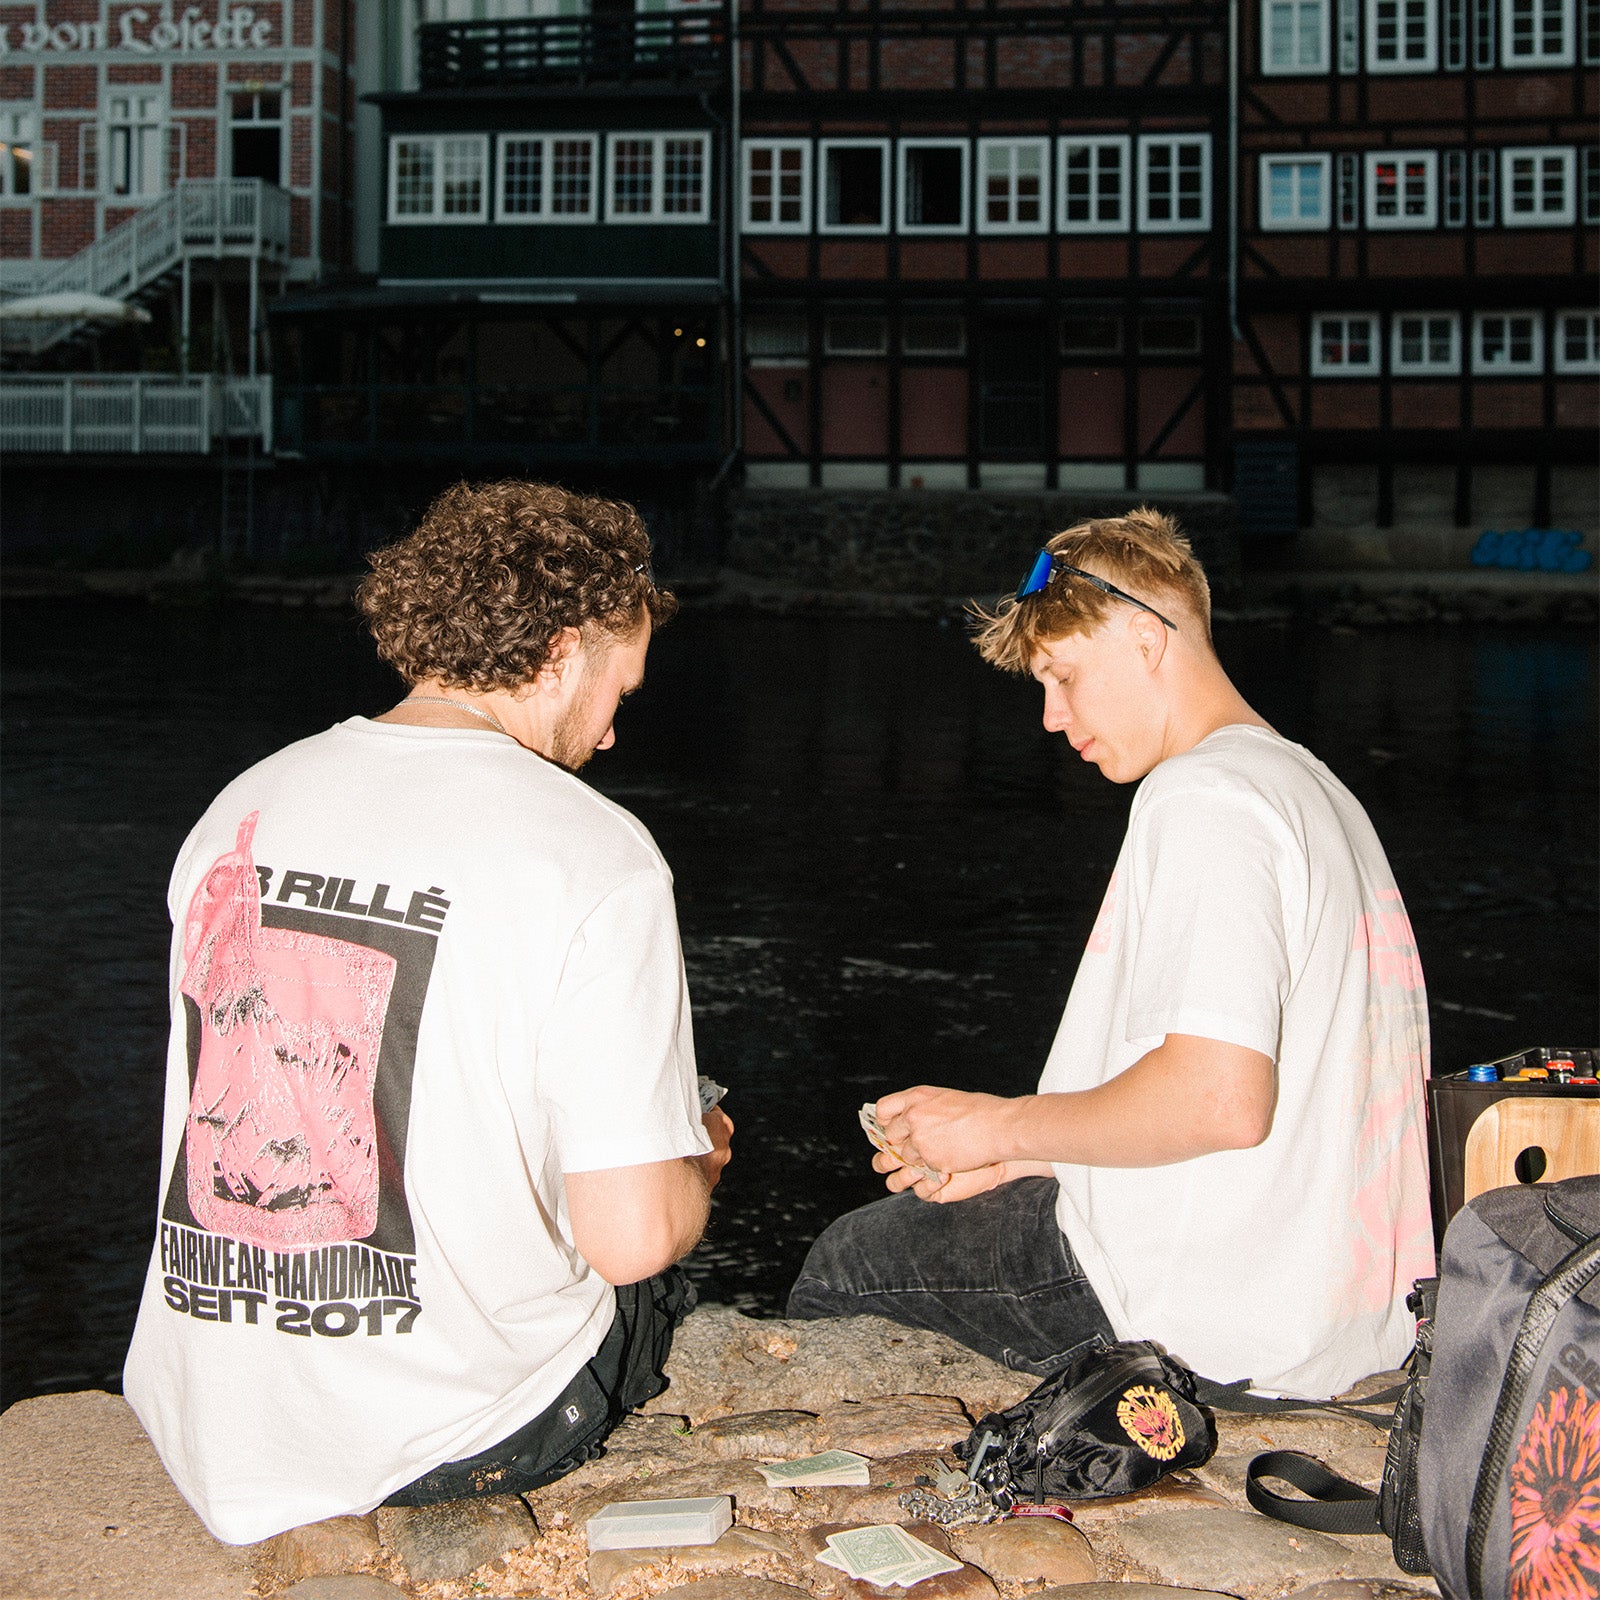 hochwertige t-shirts bedruckt in lüneburg - skate und bmx fashion nachhaltig aus deutschland